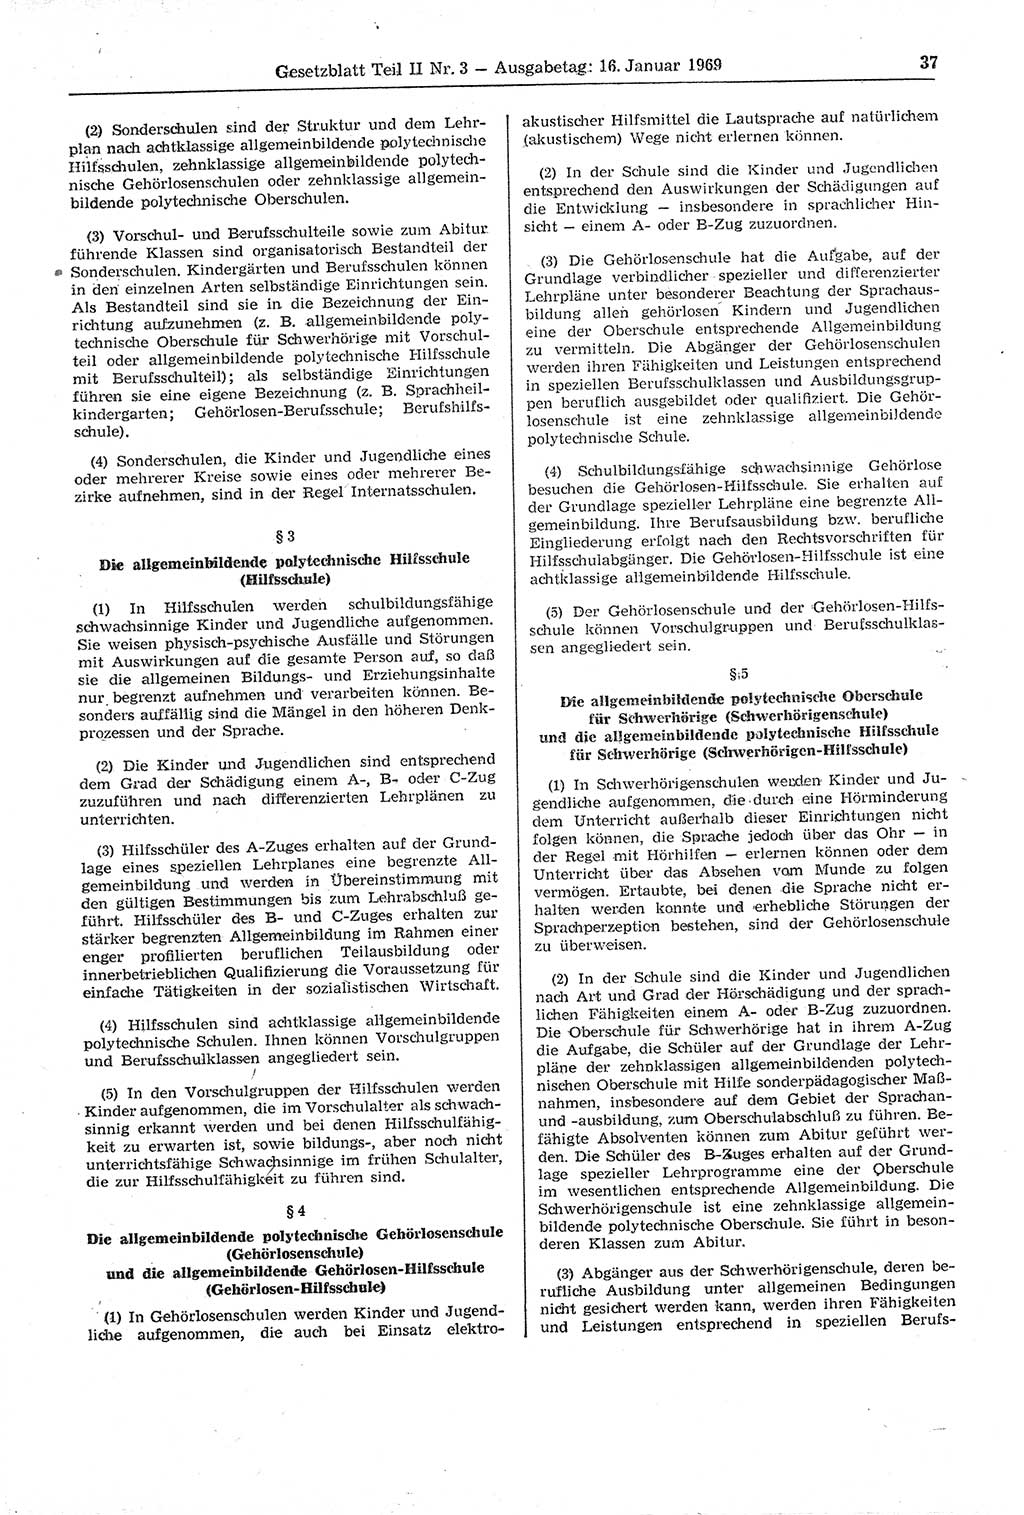 Gesetzblatt (GBl.) der Deutschen Demokratischen Republik (DDR) Teil ⅠⅠ 1969, Seite 37 (GBl. DDR ⅠⅠ 1969, S. 37)